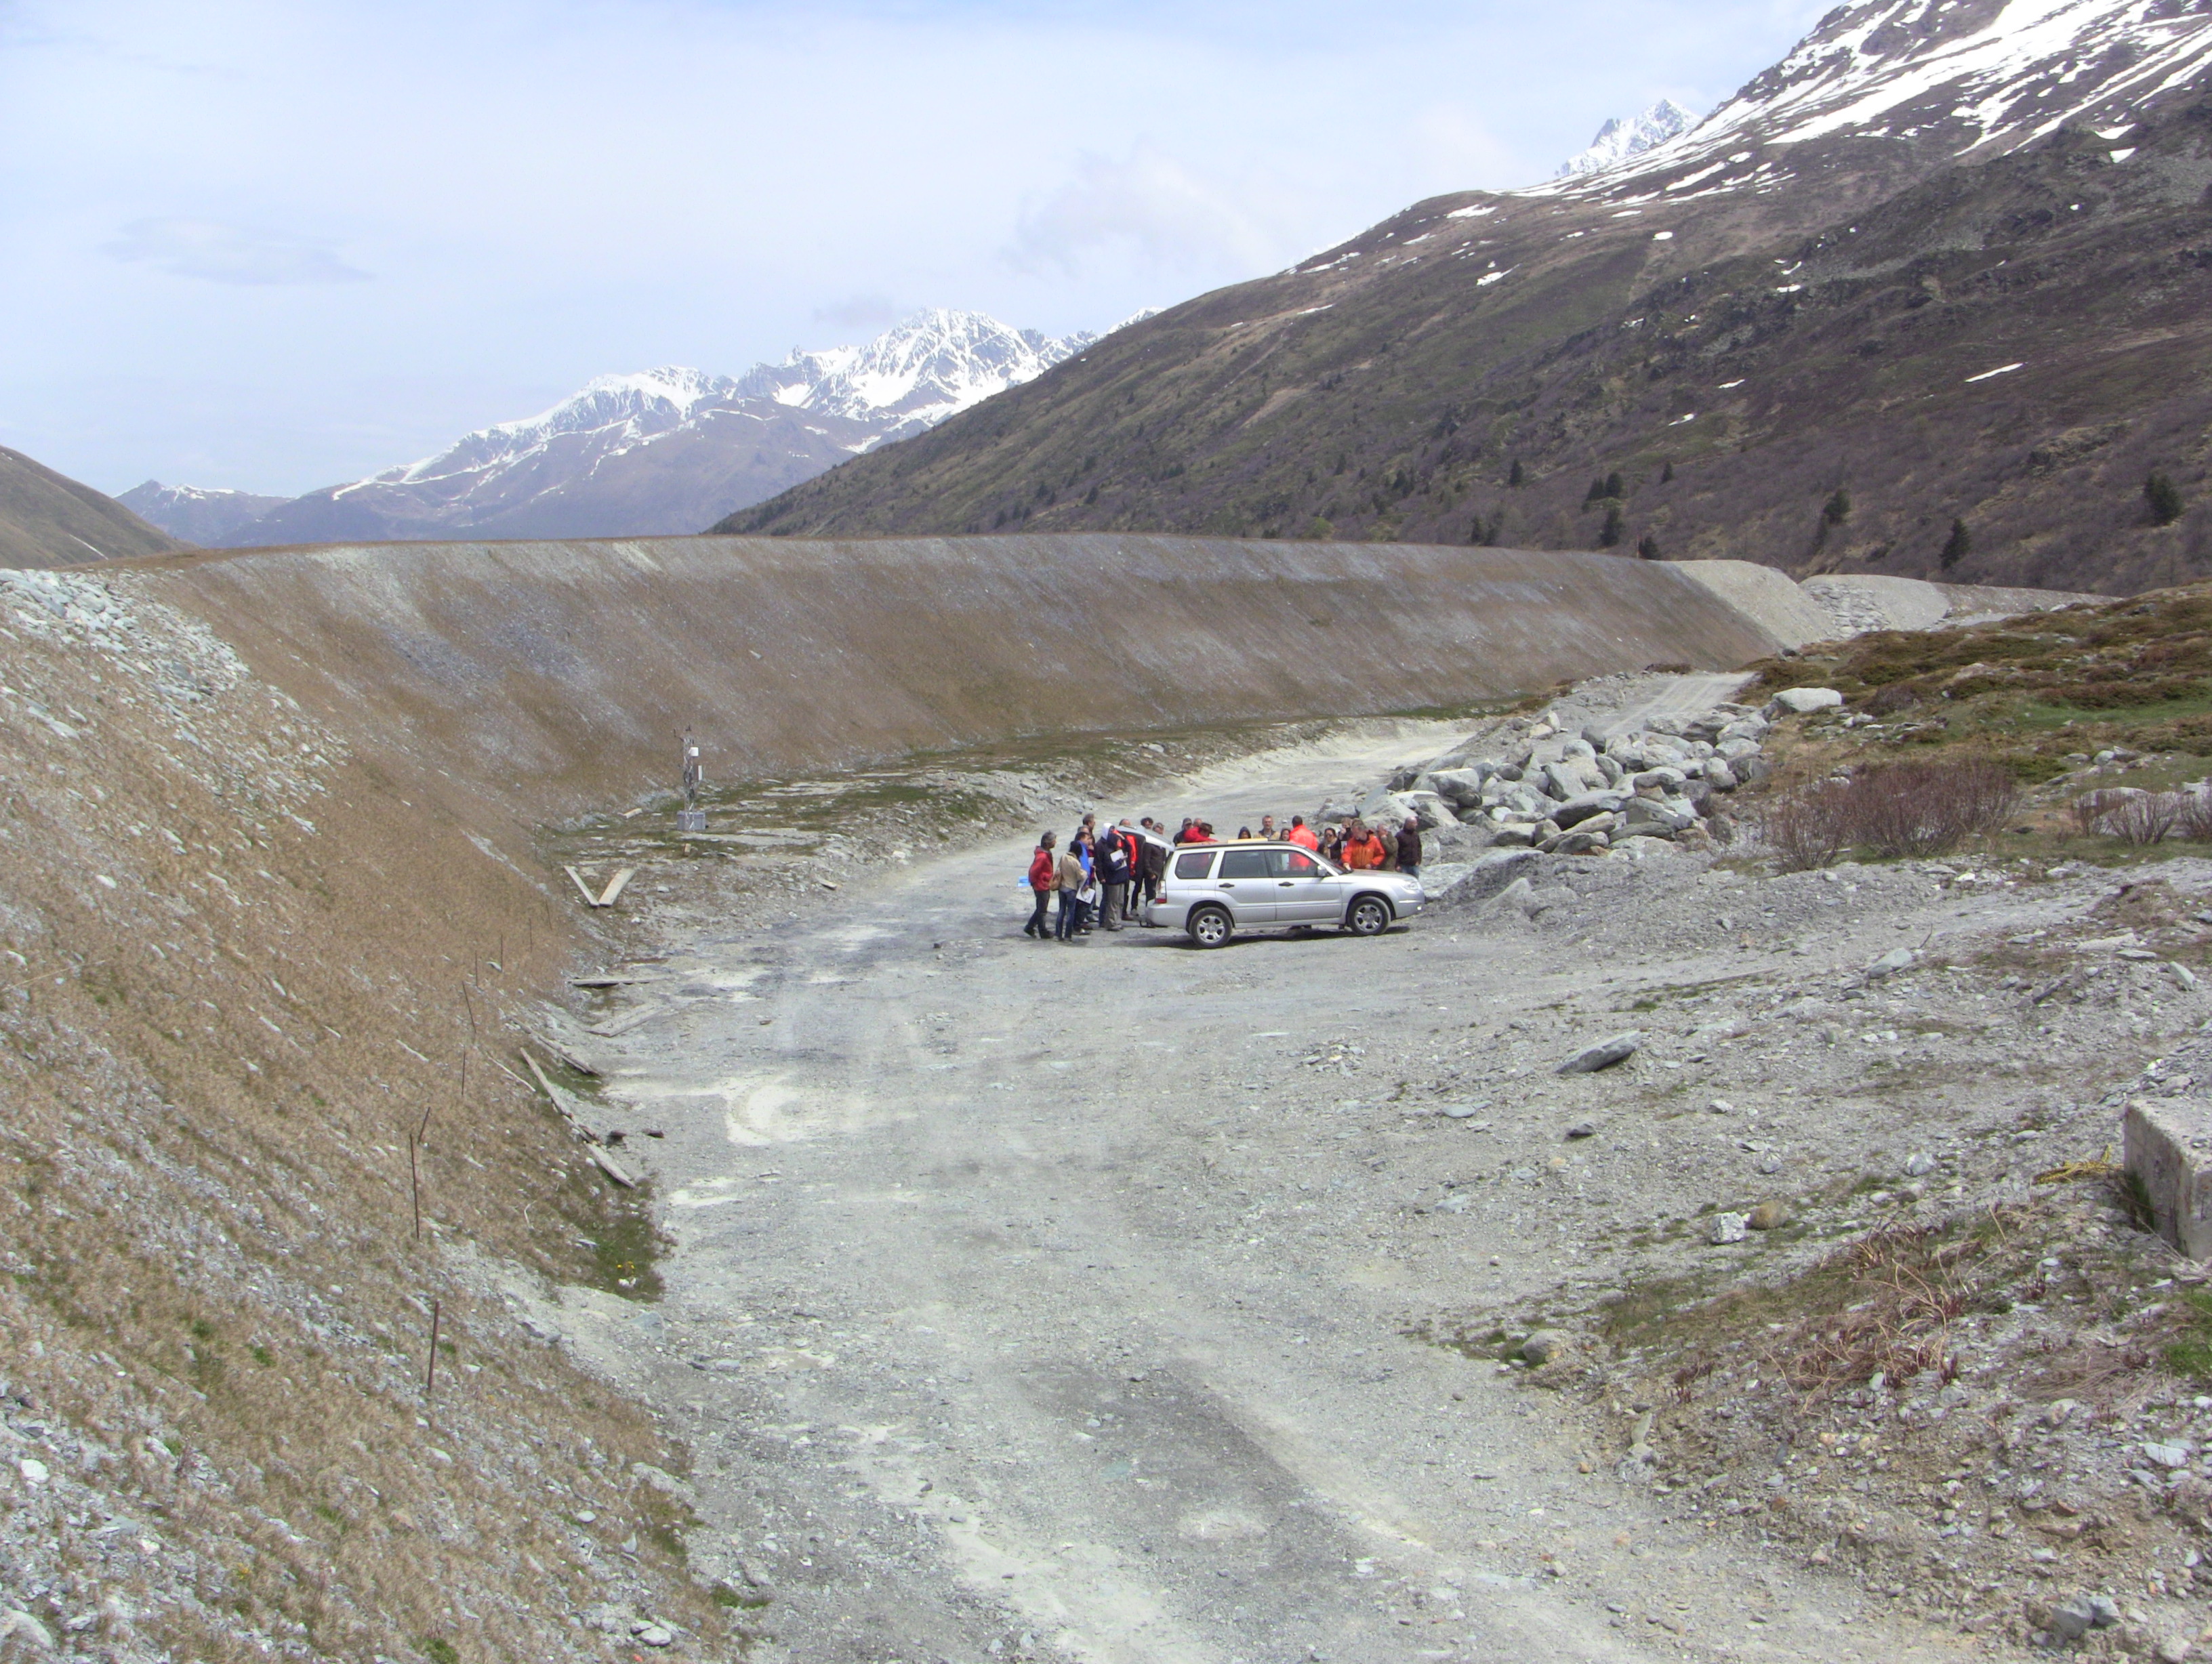 Le mur de soutènement, construit audessus de l’entrée du tunnel du Grand Saint-Bernard (côté suisse), constitue un exemple de mesure pour protéger les véhicules des avalanches et des chutes de rochers